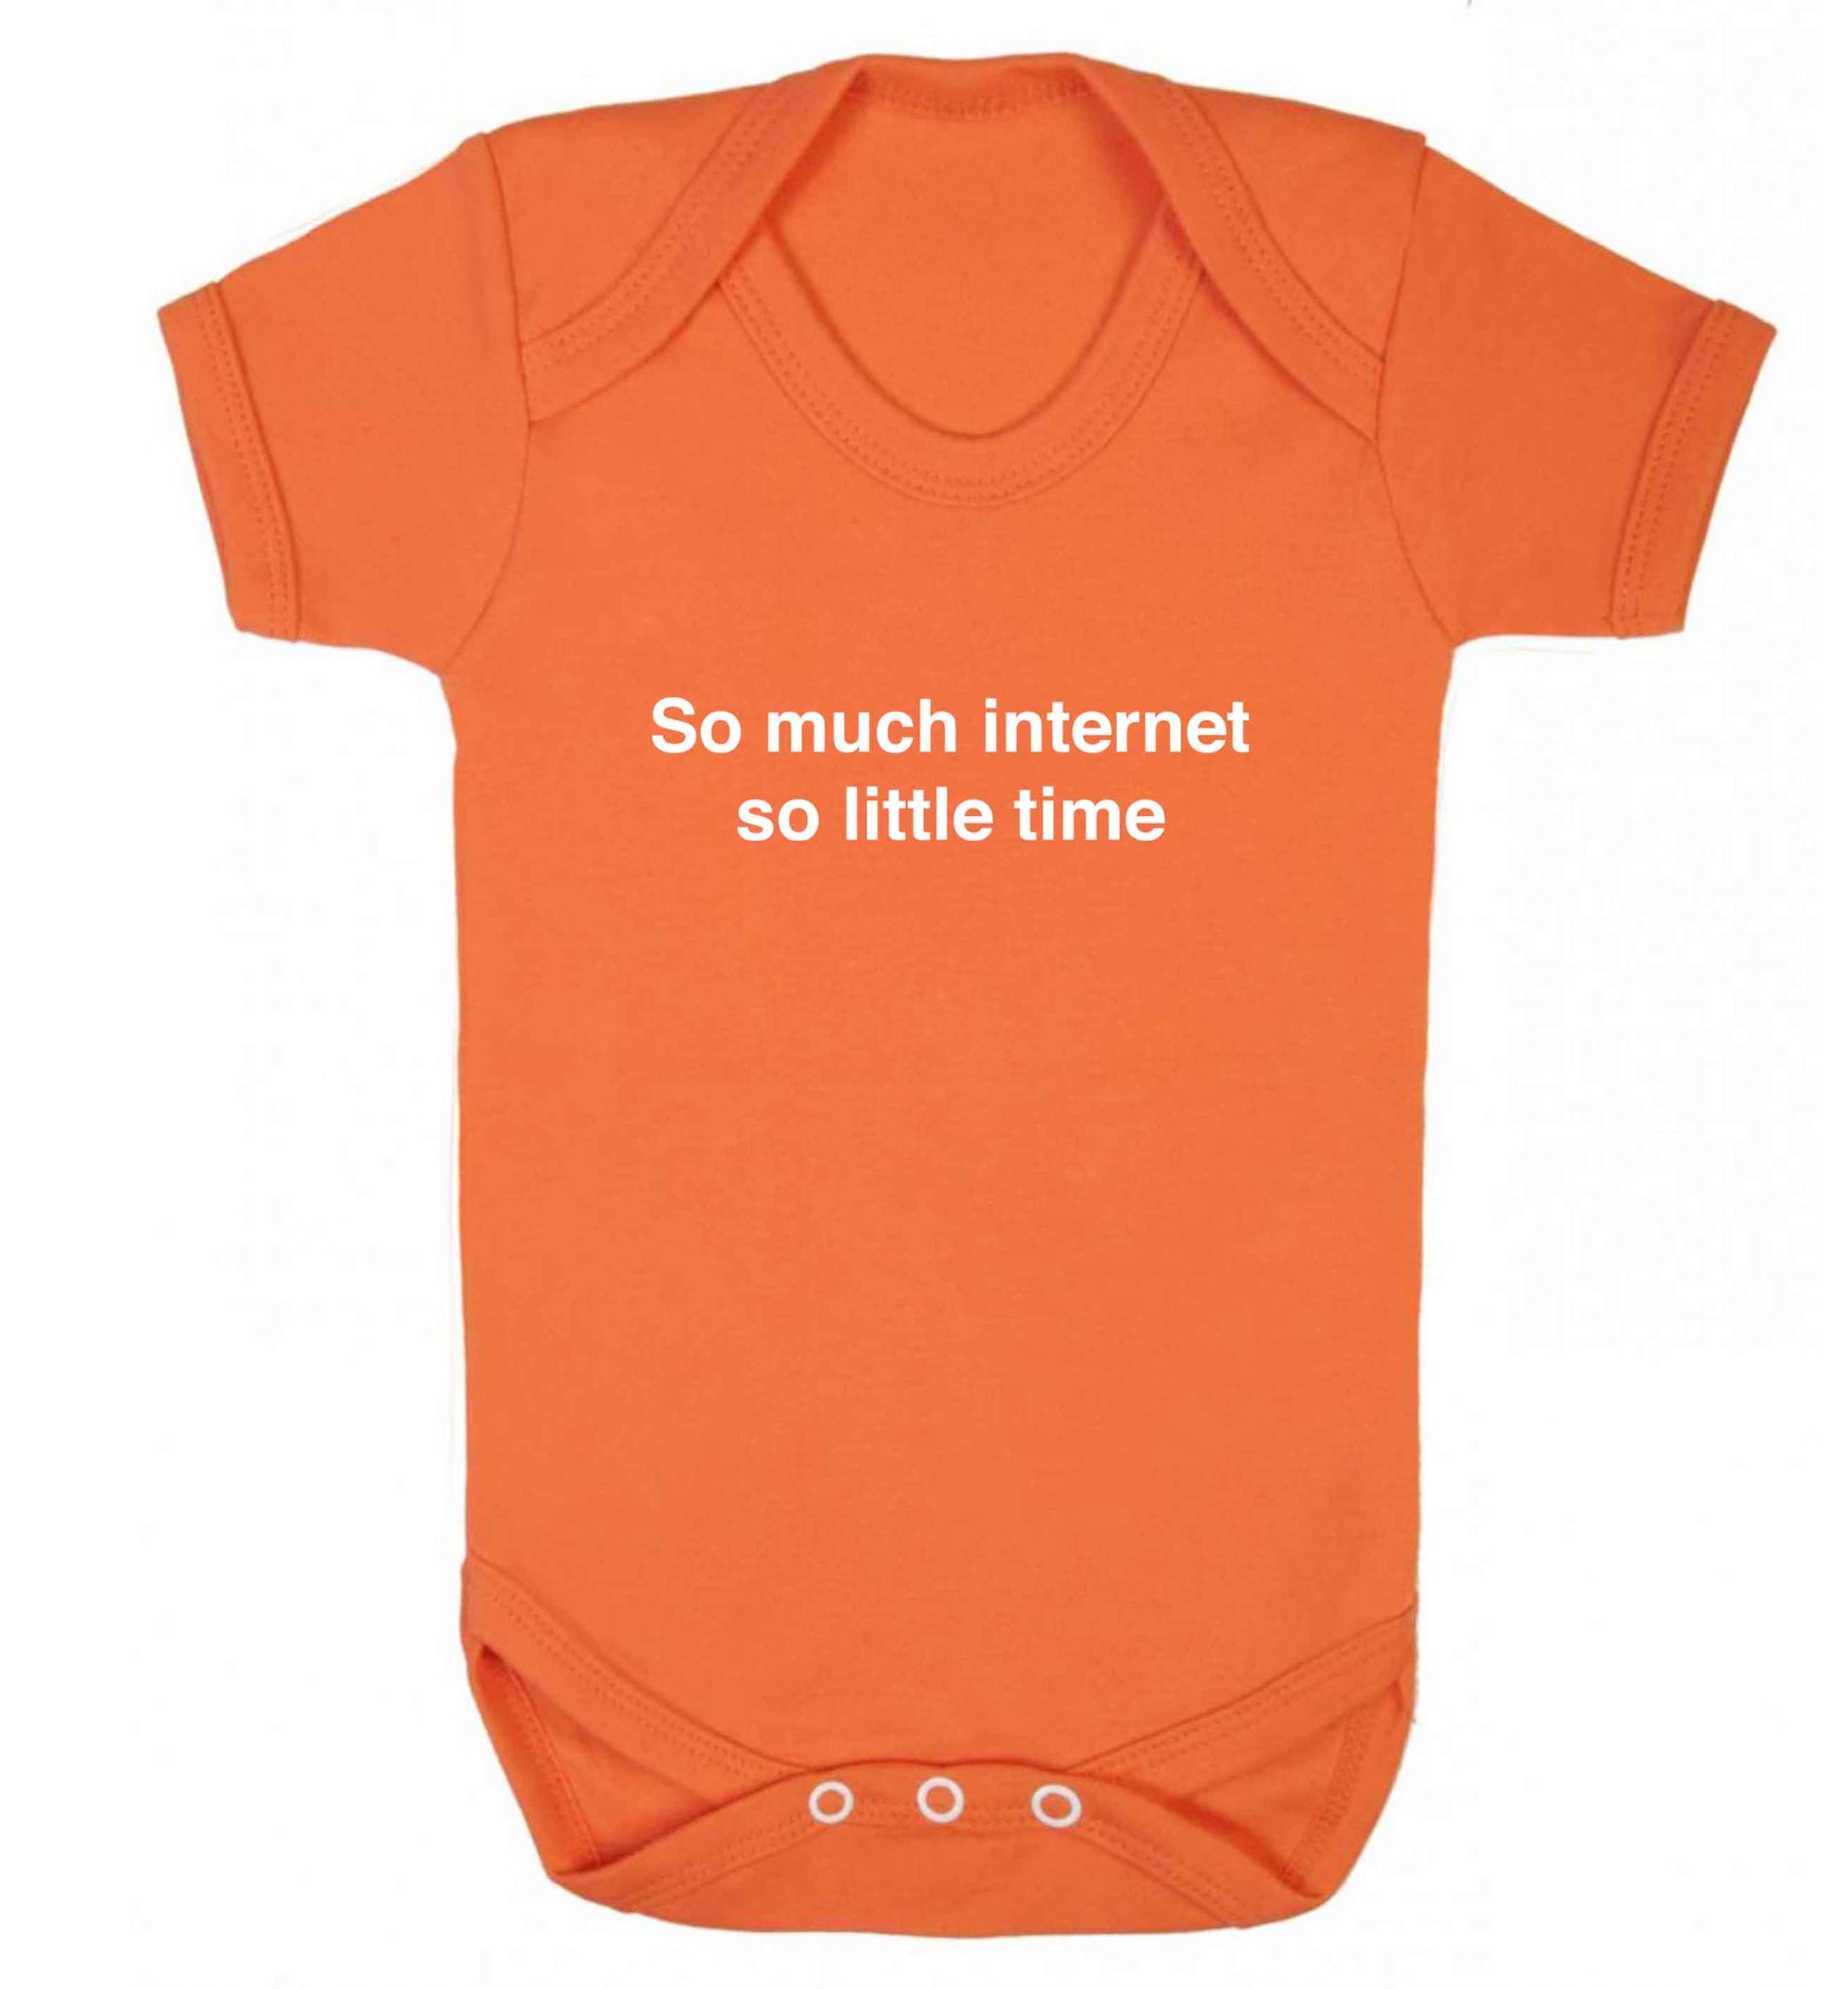 So much internet so little time baby vest orange 18-24 months